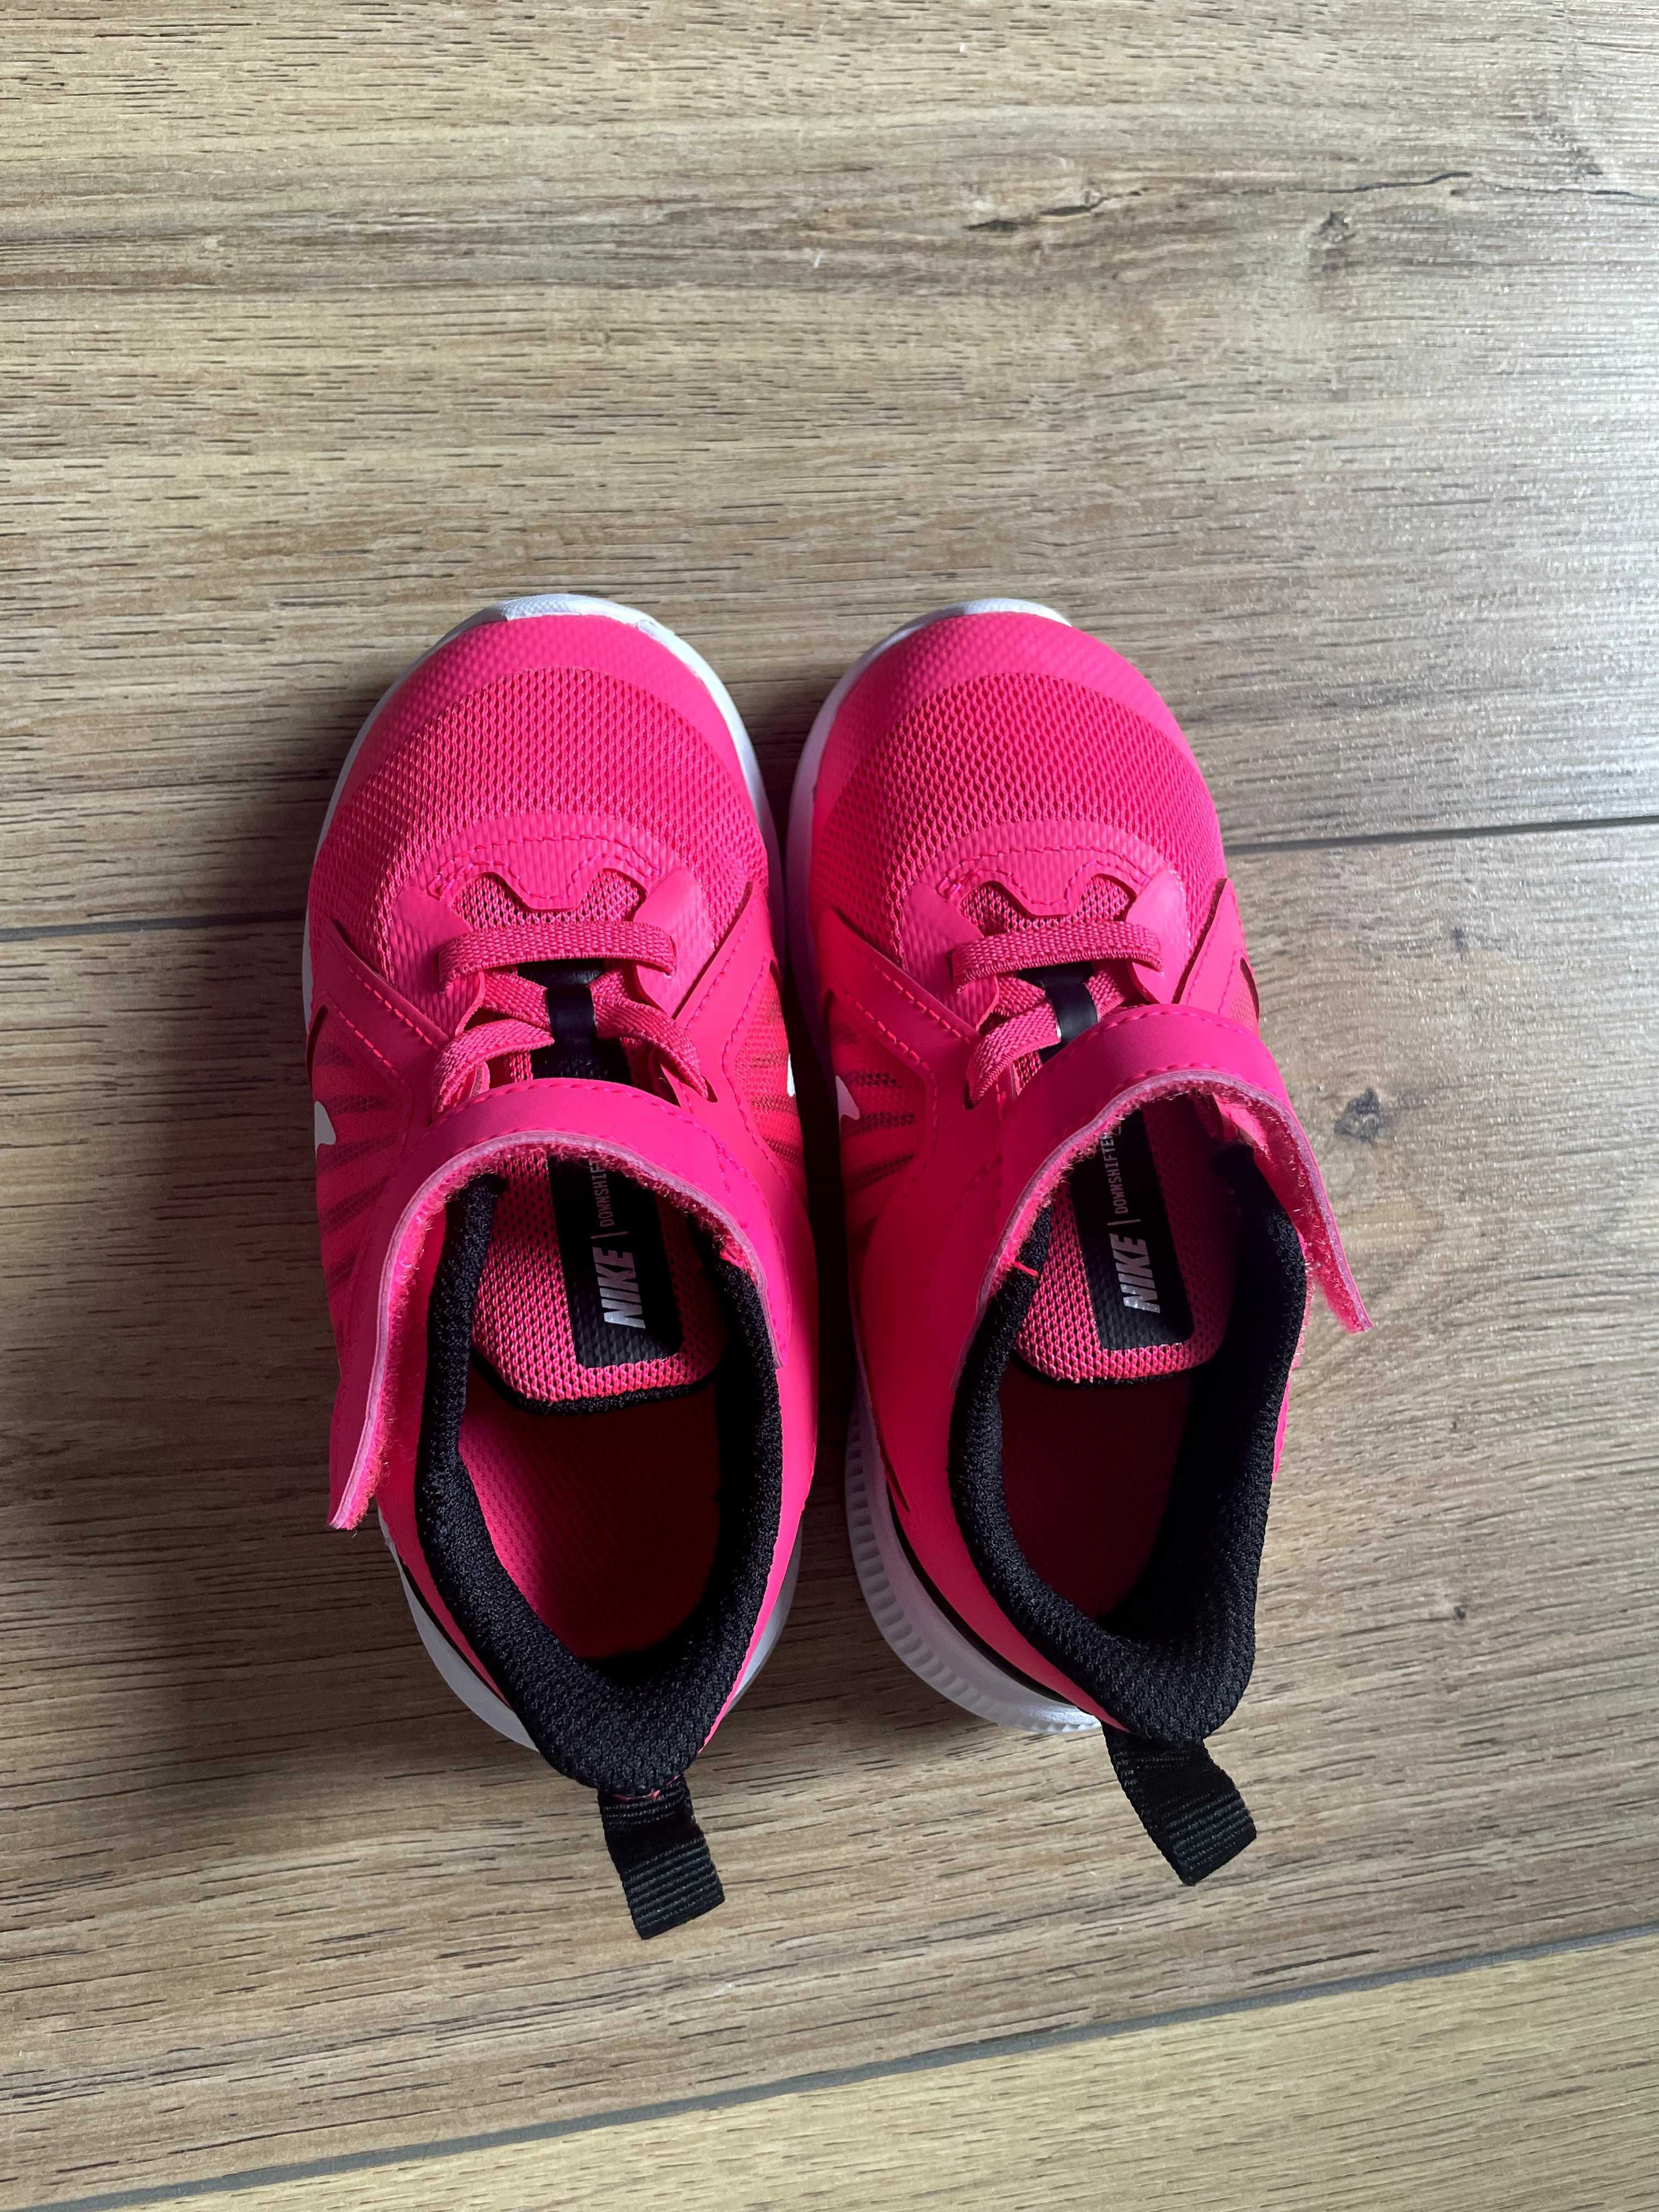 Buty Nike dla dziewczynki r. 25 NOWE